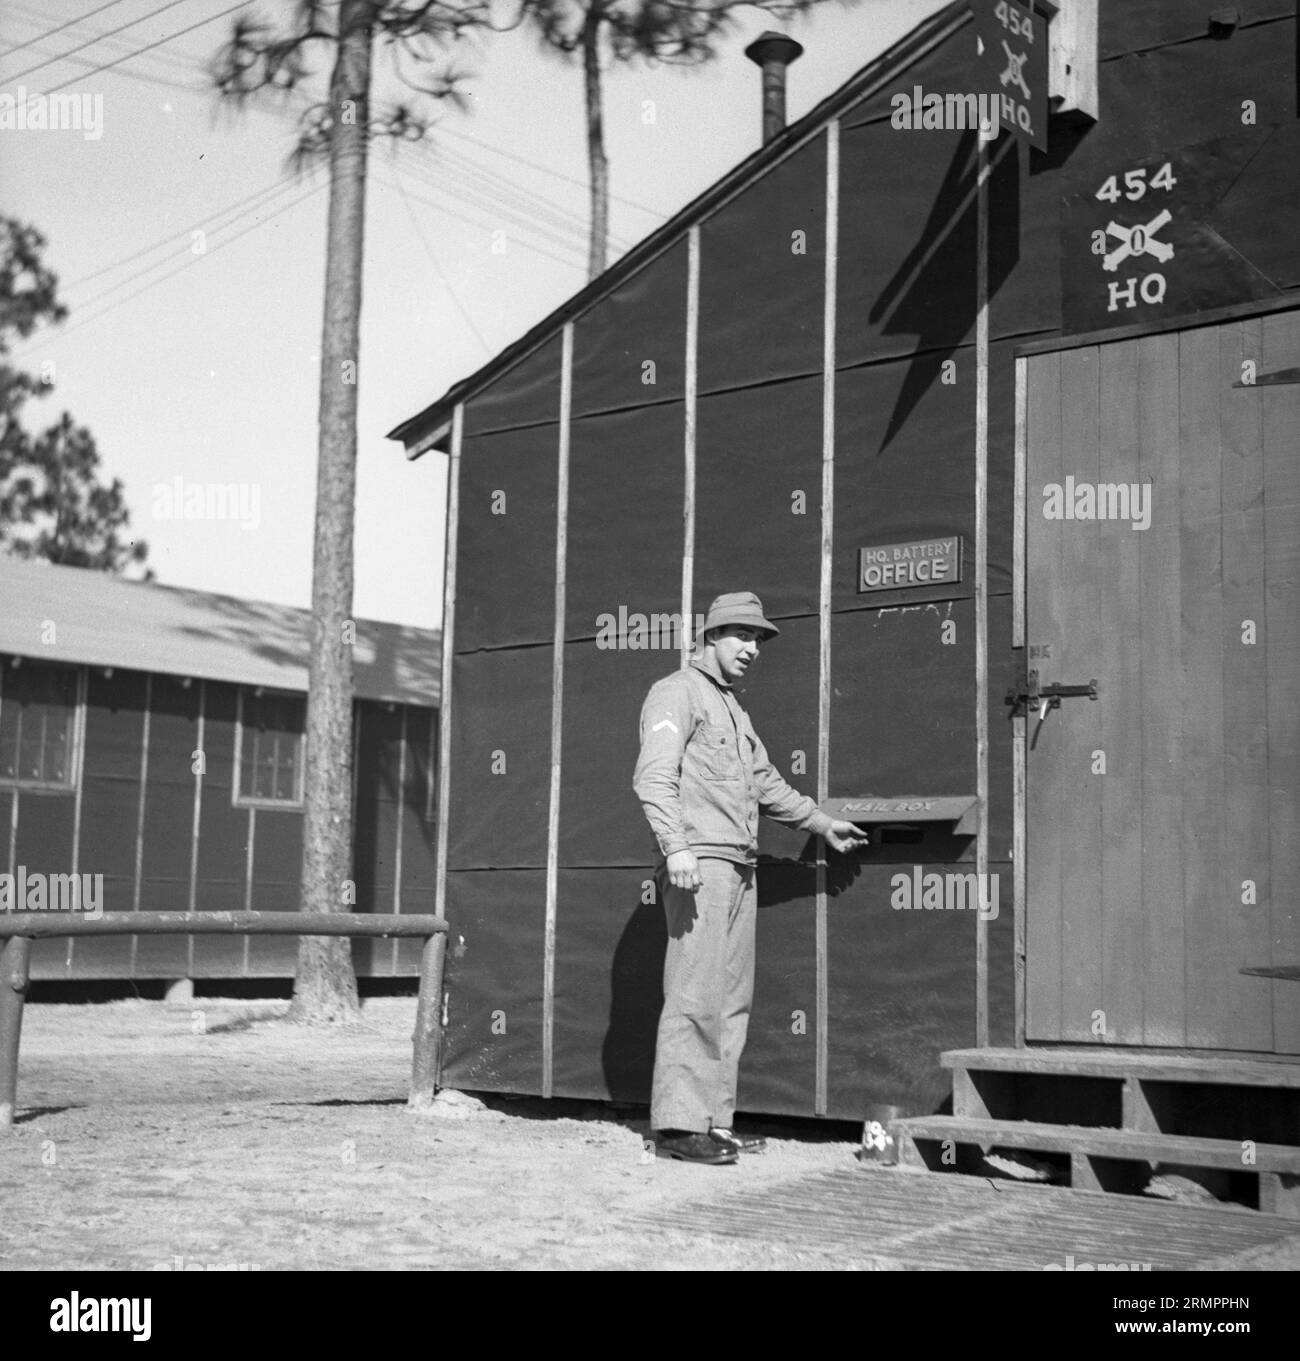 Soldat, der einen Brief in die Post steckt. Mitglieder der 114. Infanteriedivision der US-Armee trainieren im Zweiten Weltkrieg gegen Deutschland in Europa. Stockfoto